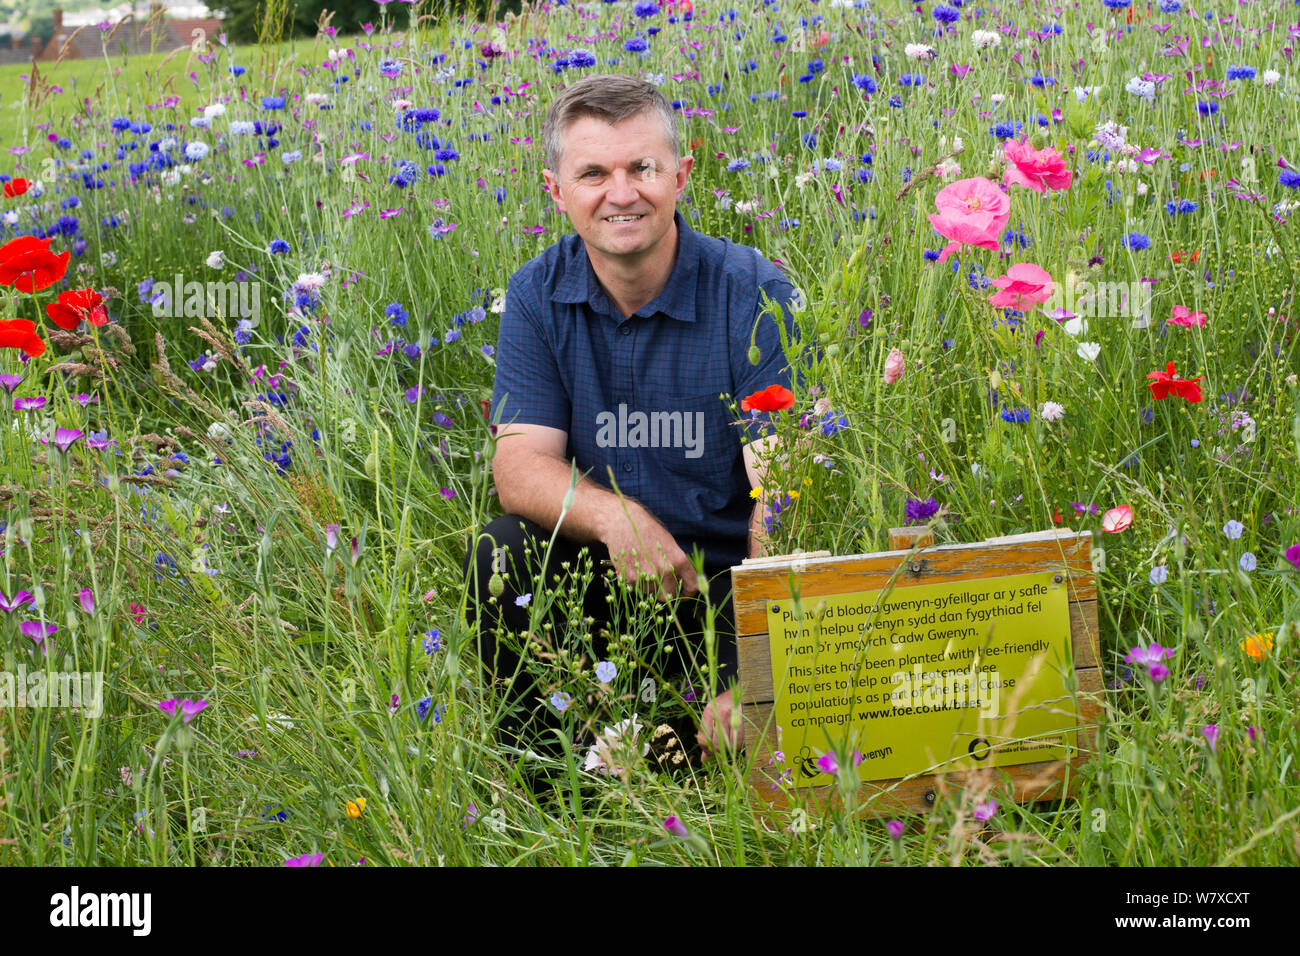 Steve Caddy, Operations Manager von &#39; Greenspace&#39;, mit Wildblumen gepflanzt Bienen als Teil der Freunde der Erde&#39 anzuziehen; Biene Freundlich &#39; Projekt durchgeführt mit der Bron Afon Community Housing Association. In der Nähe von Cwmbran, South Wales, UK. Juli 2014. Stockfoto